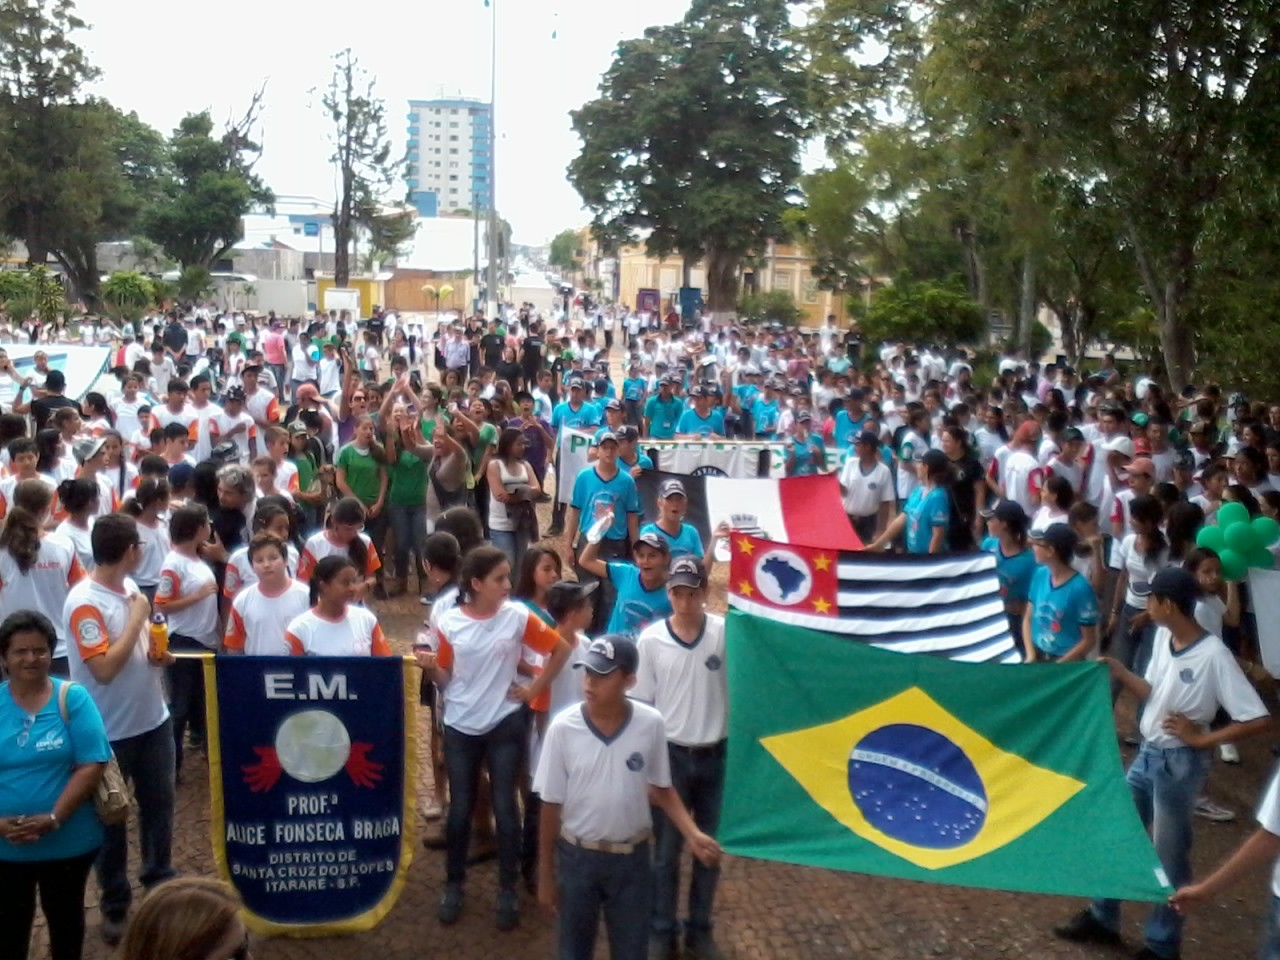 Passeata reuniu aproximadamente três mil estudantes em Itararé (SP). (Foto: Giliardy Freitas / TV TEM)